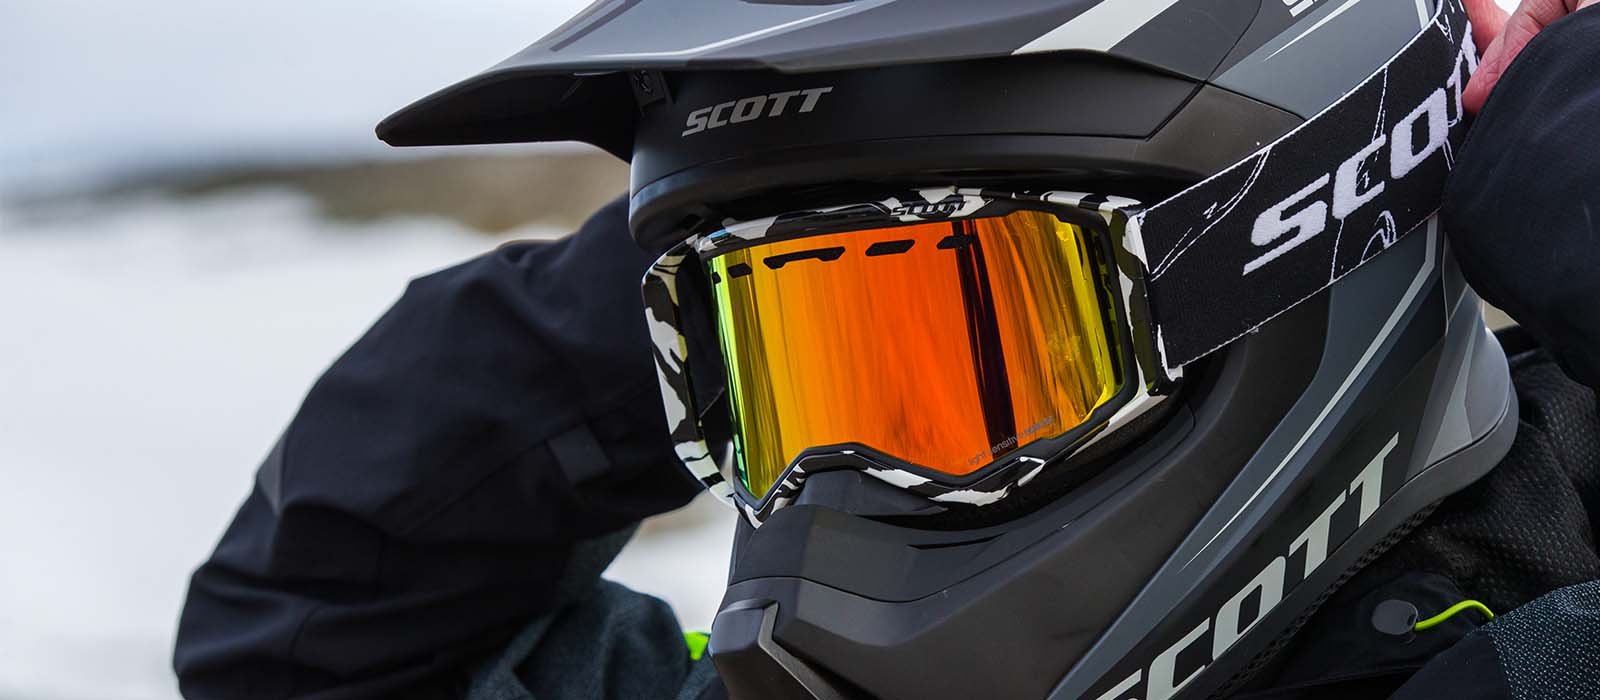 Gafas Moto de Nieve Scott Prospect Beige-Marrón-Plateado Cromado - Ahora  con un 15% de descuento